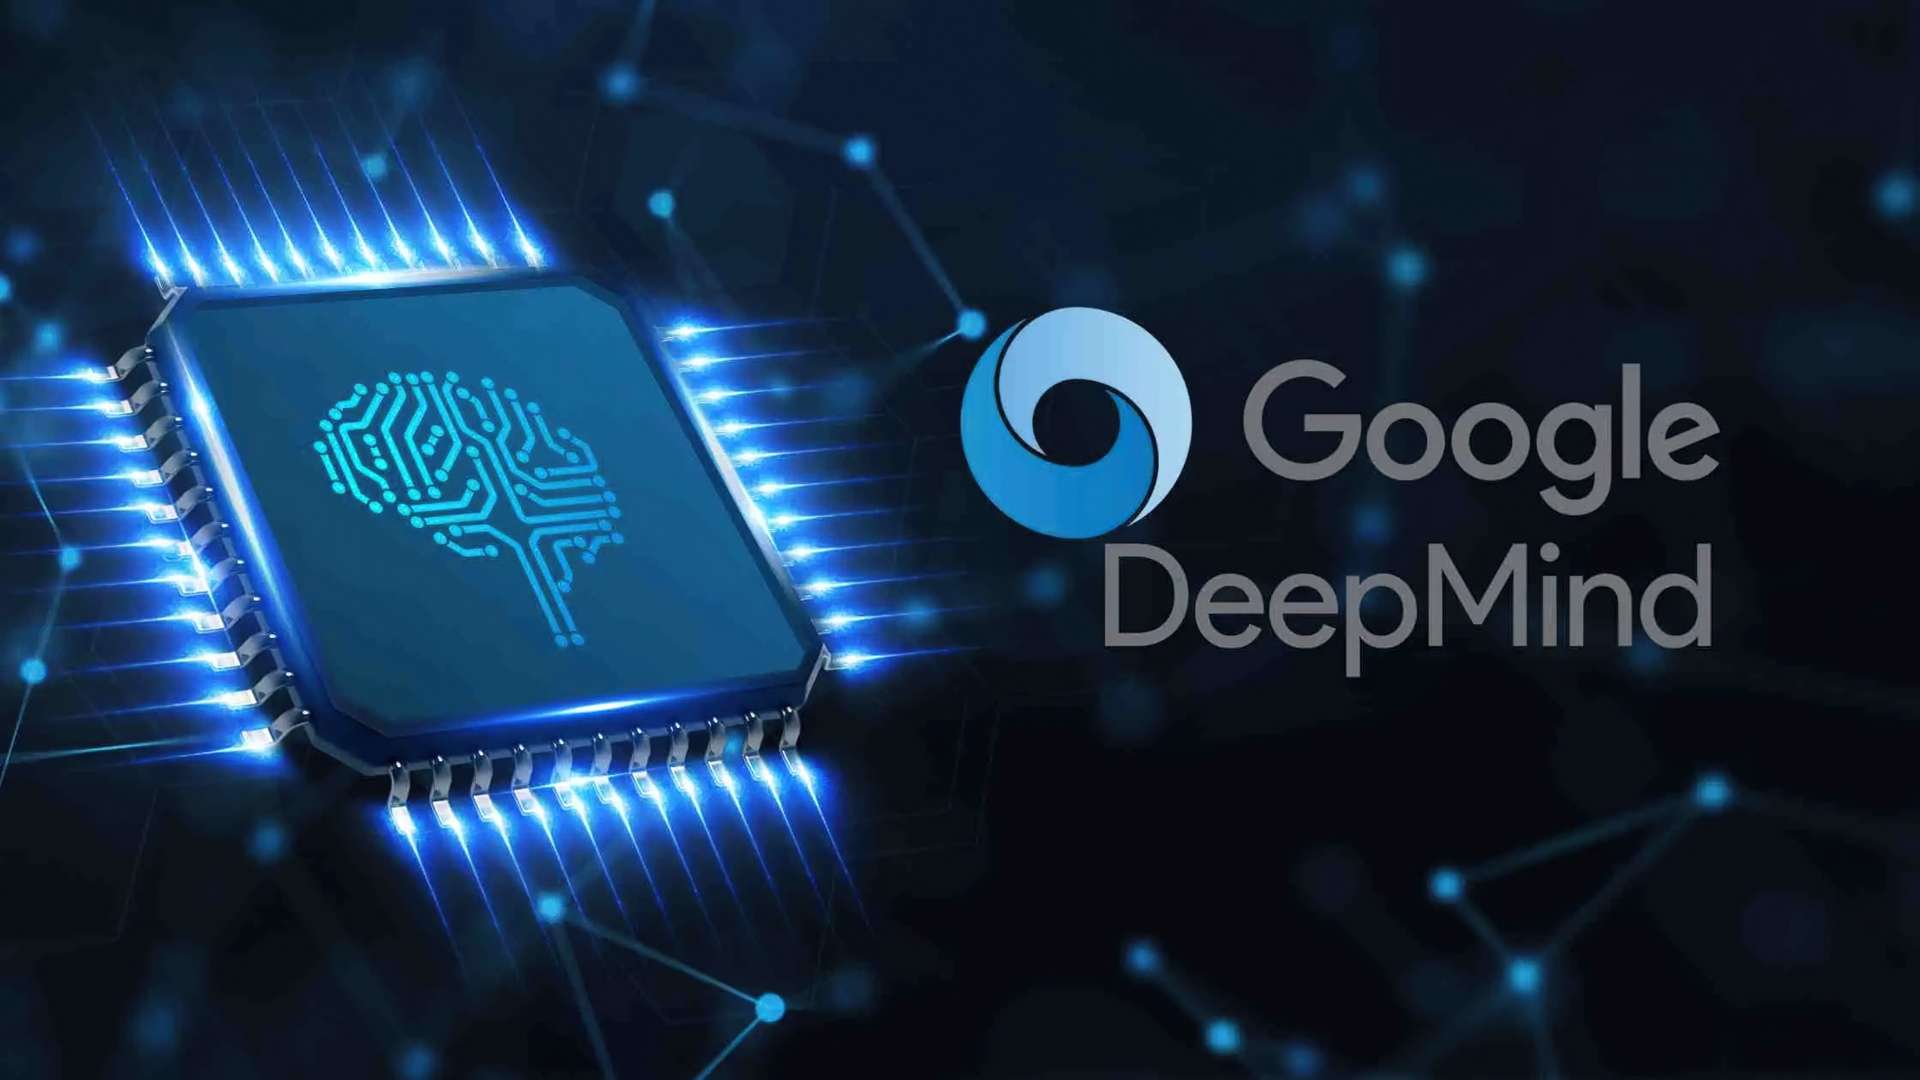 DeepMind do Google diz que está prestes a alcançar inteligência em nível humano